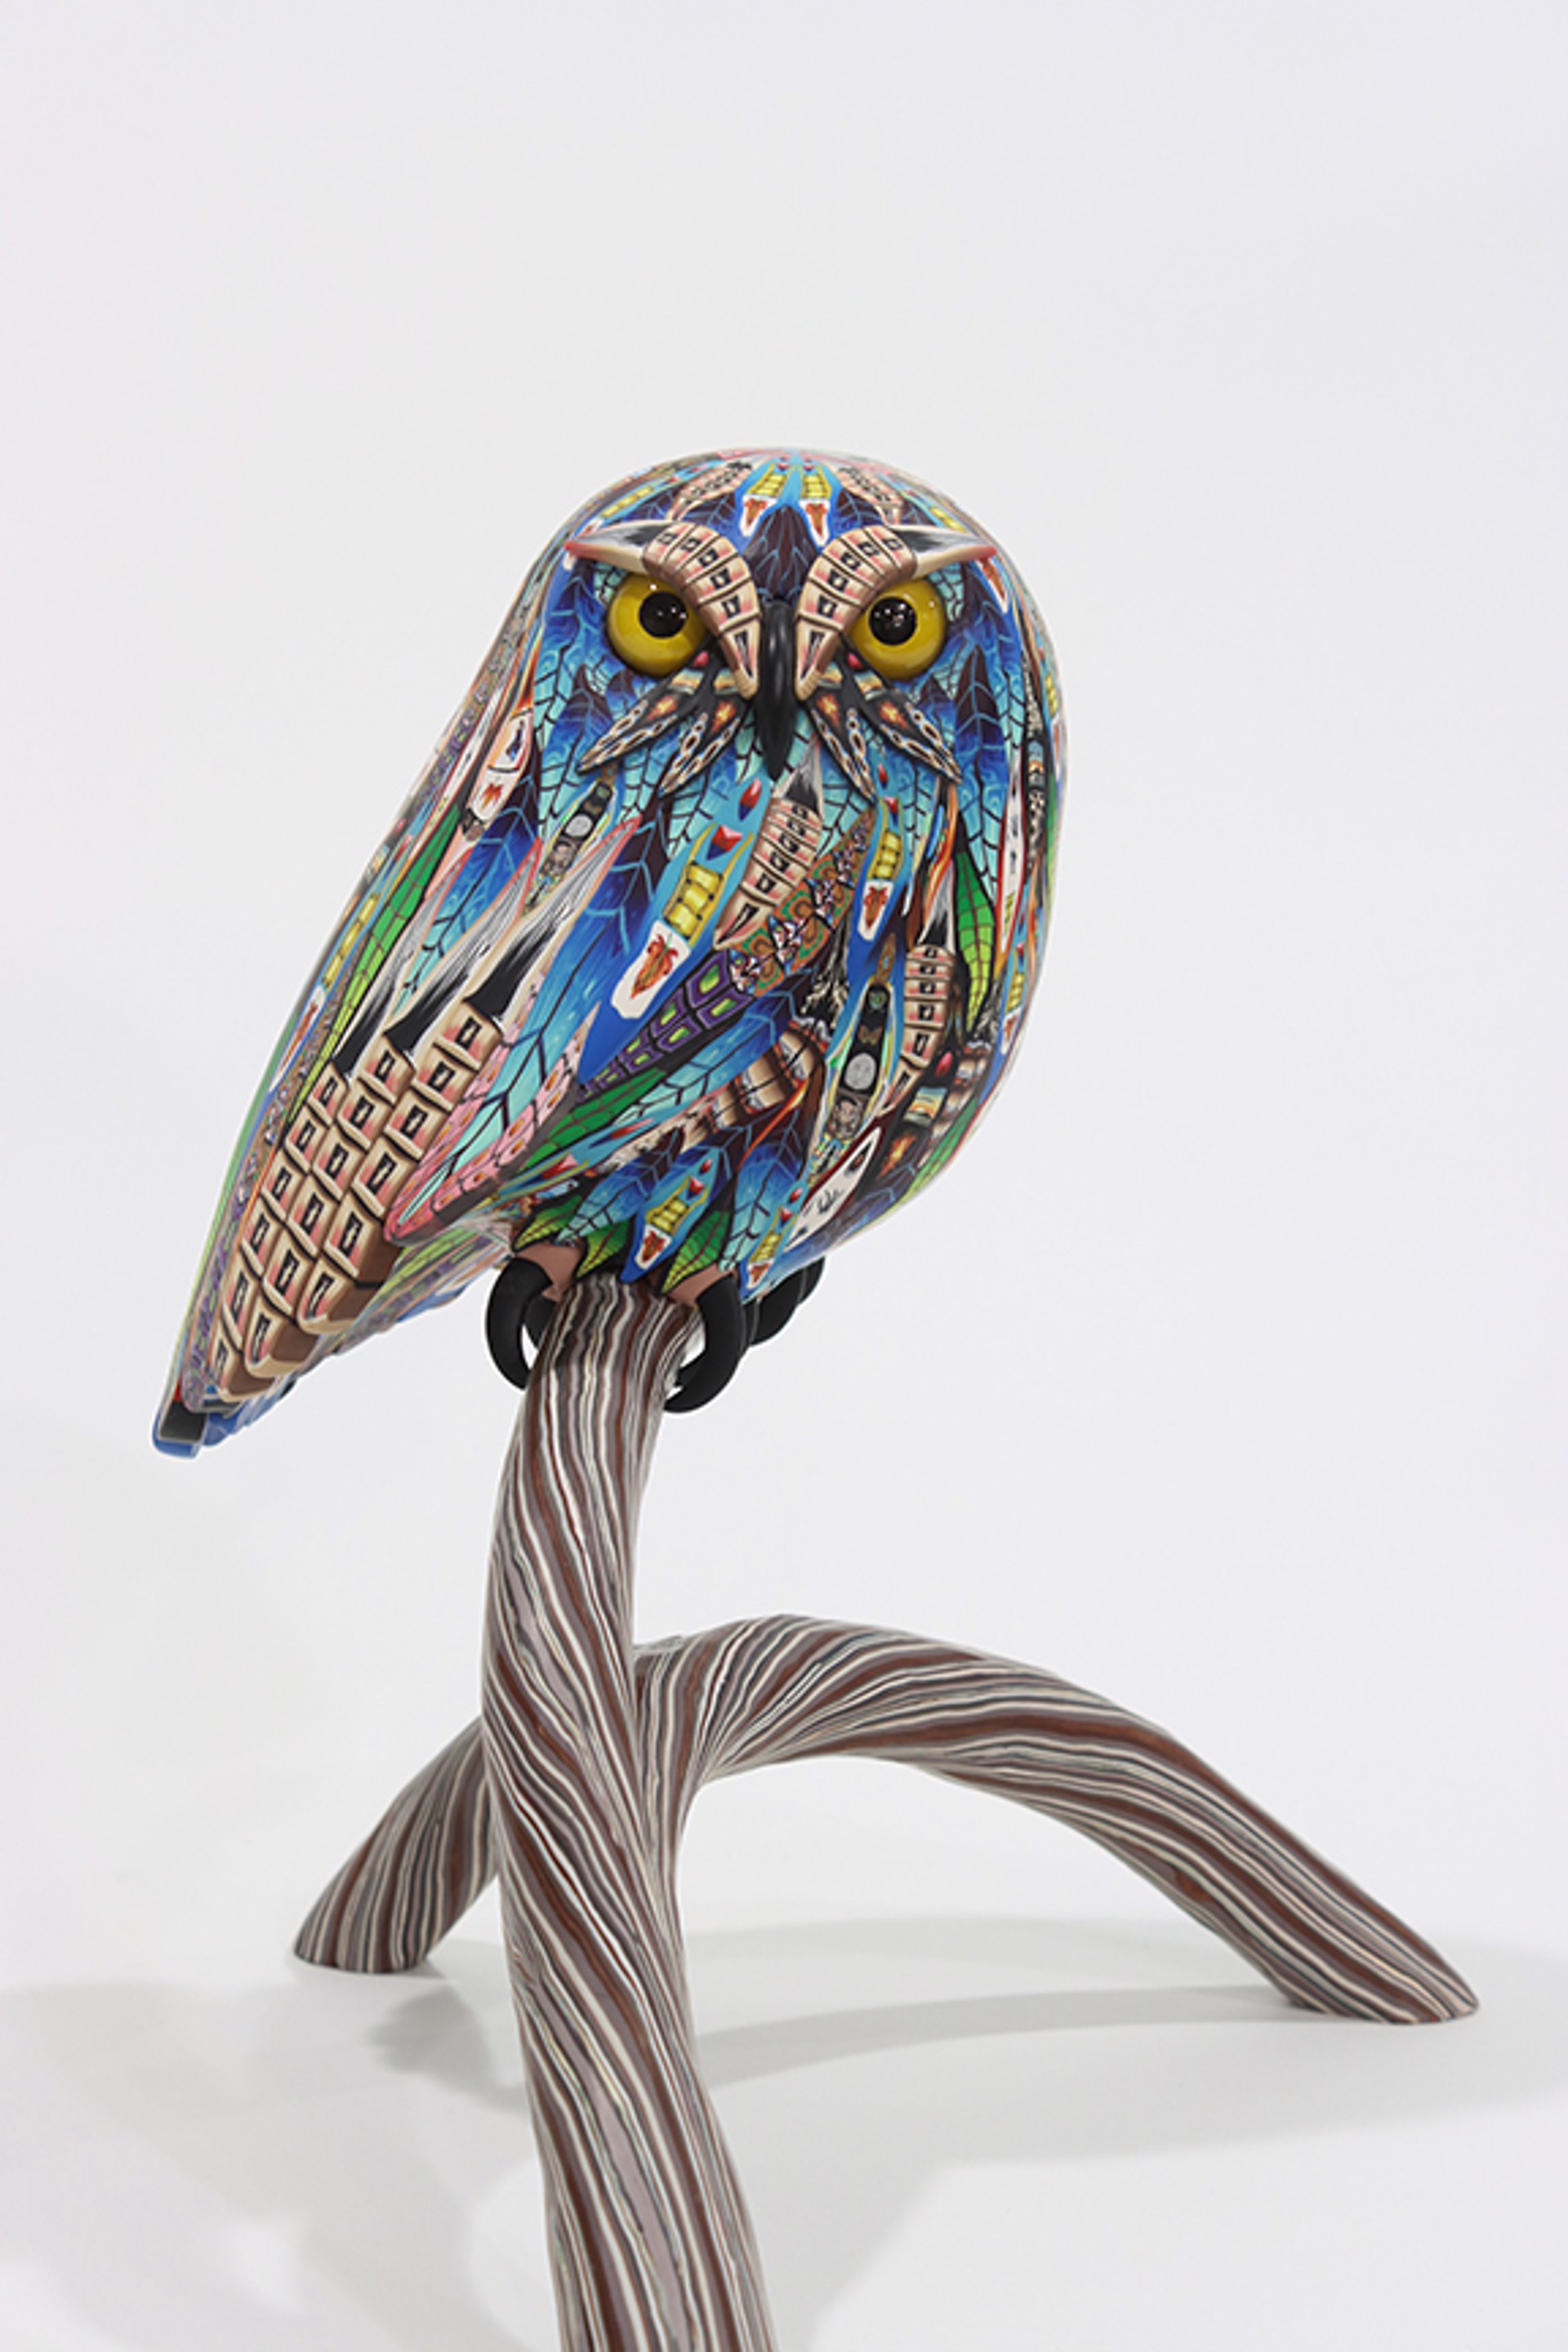 Medium Owl by Adam Thomas Rees